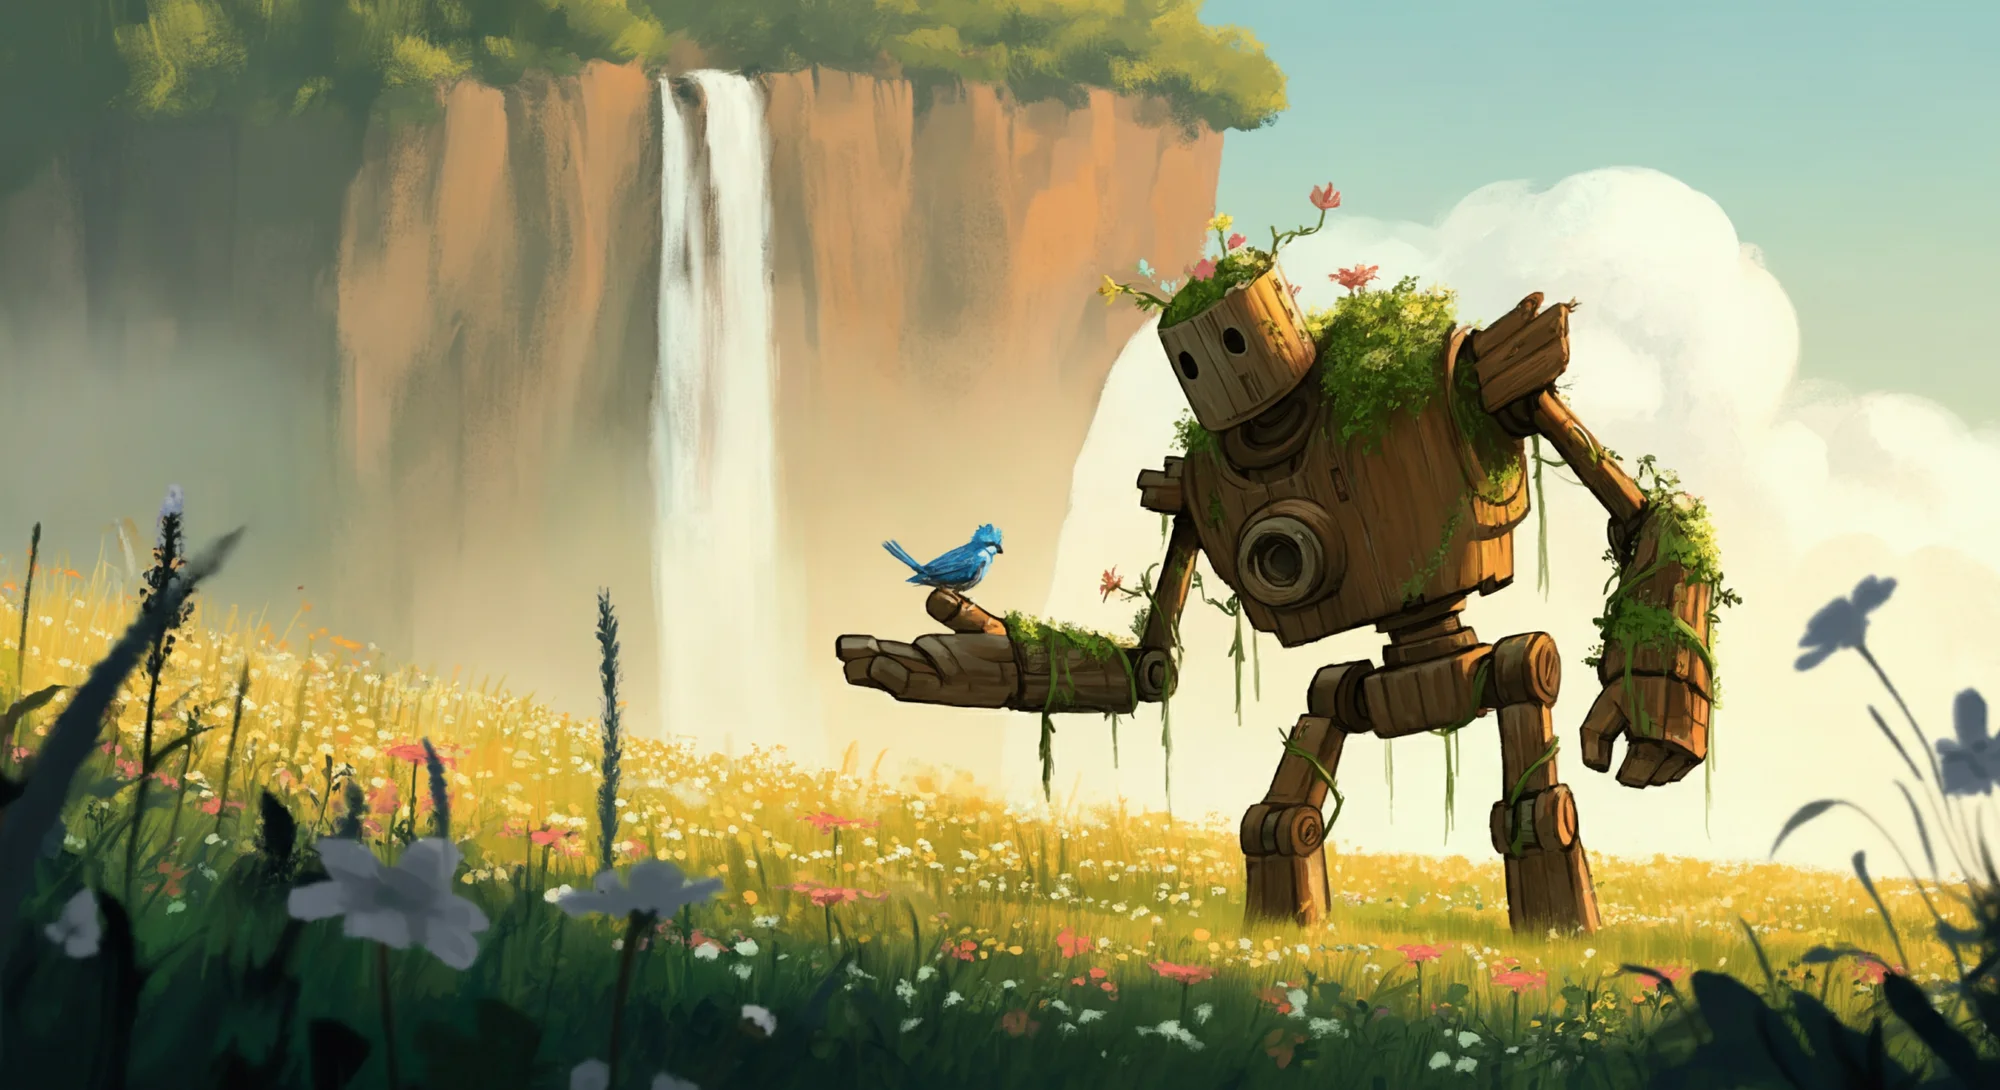 Un robot en bois couvert de mousse se tient dans un champ de fleurs sauvages et tend la main à un petit oiseau bleu perché dessus. Une cascade coule sur une falaise en arrière-plan.